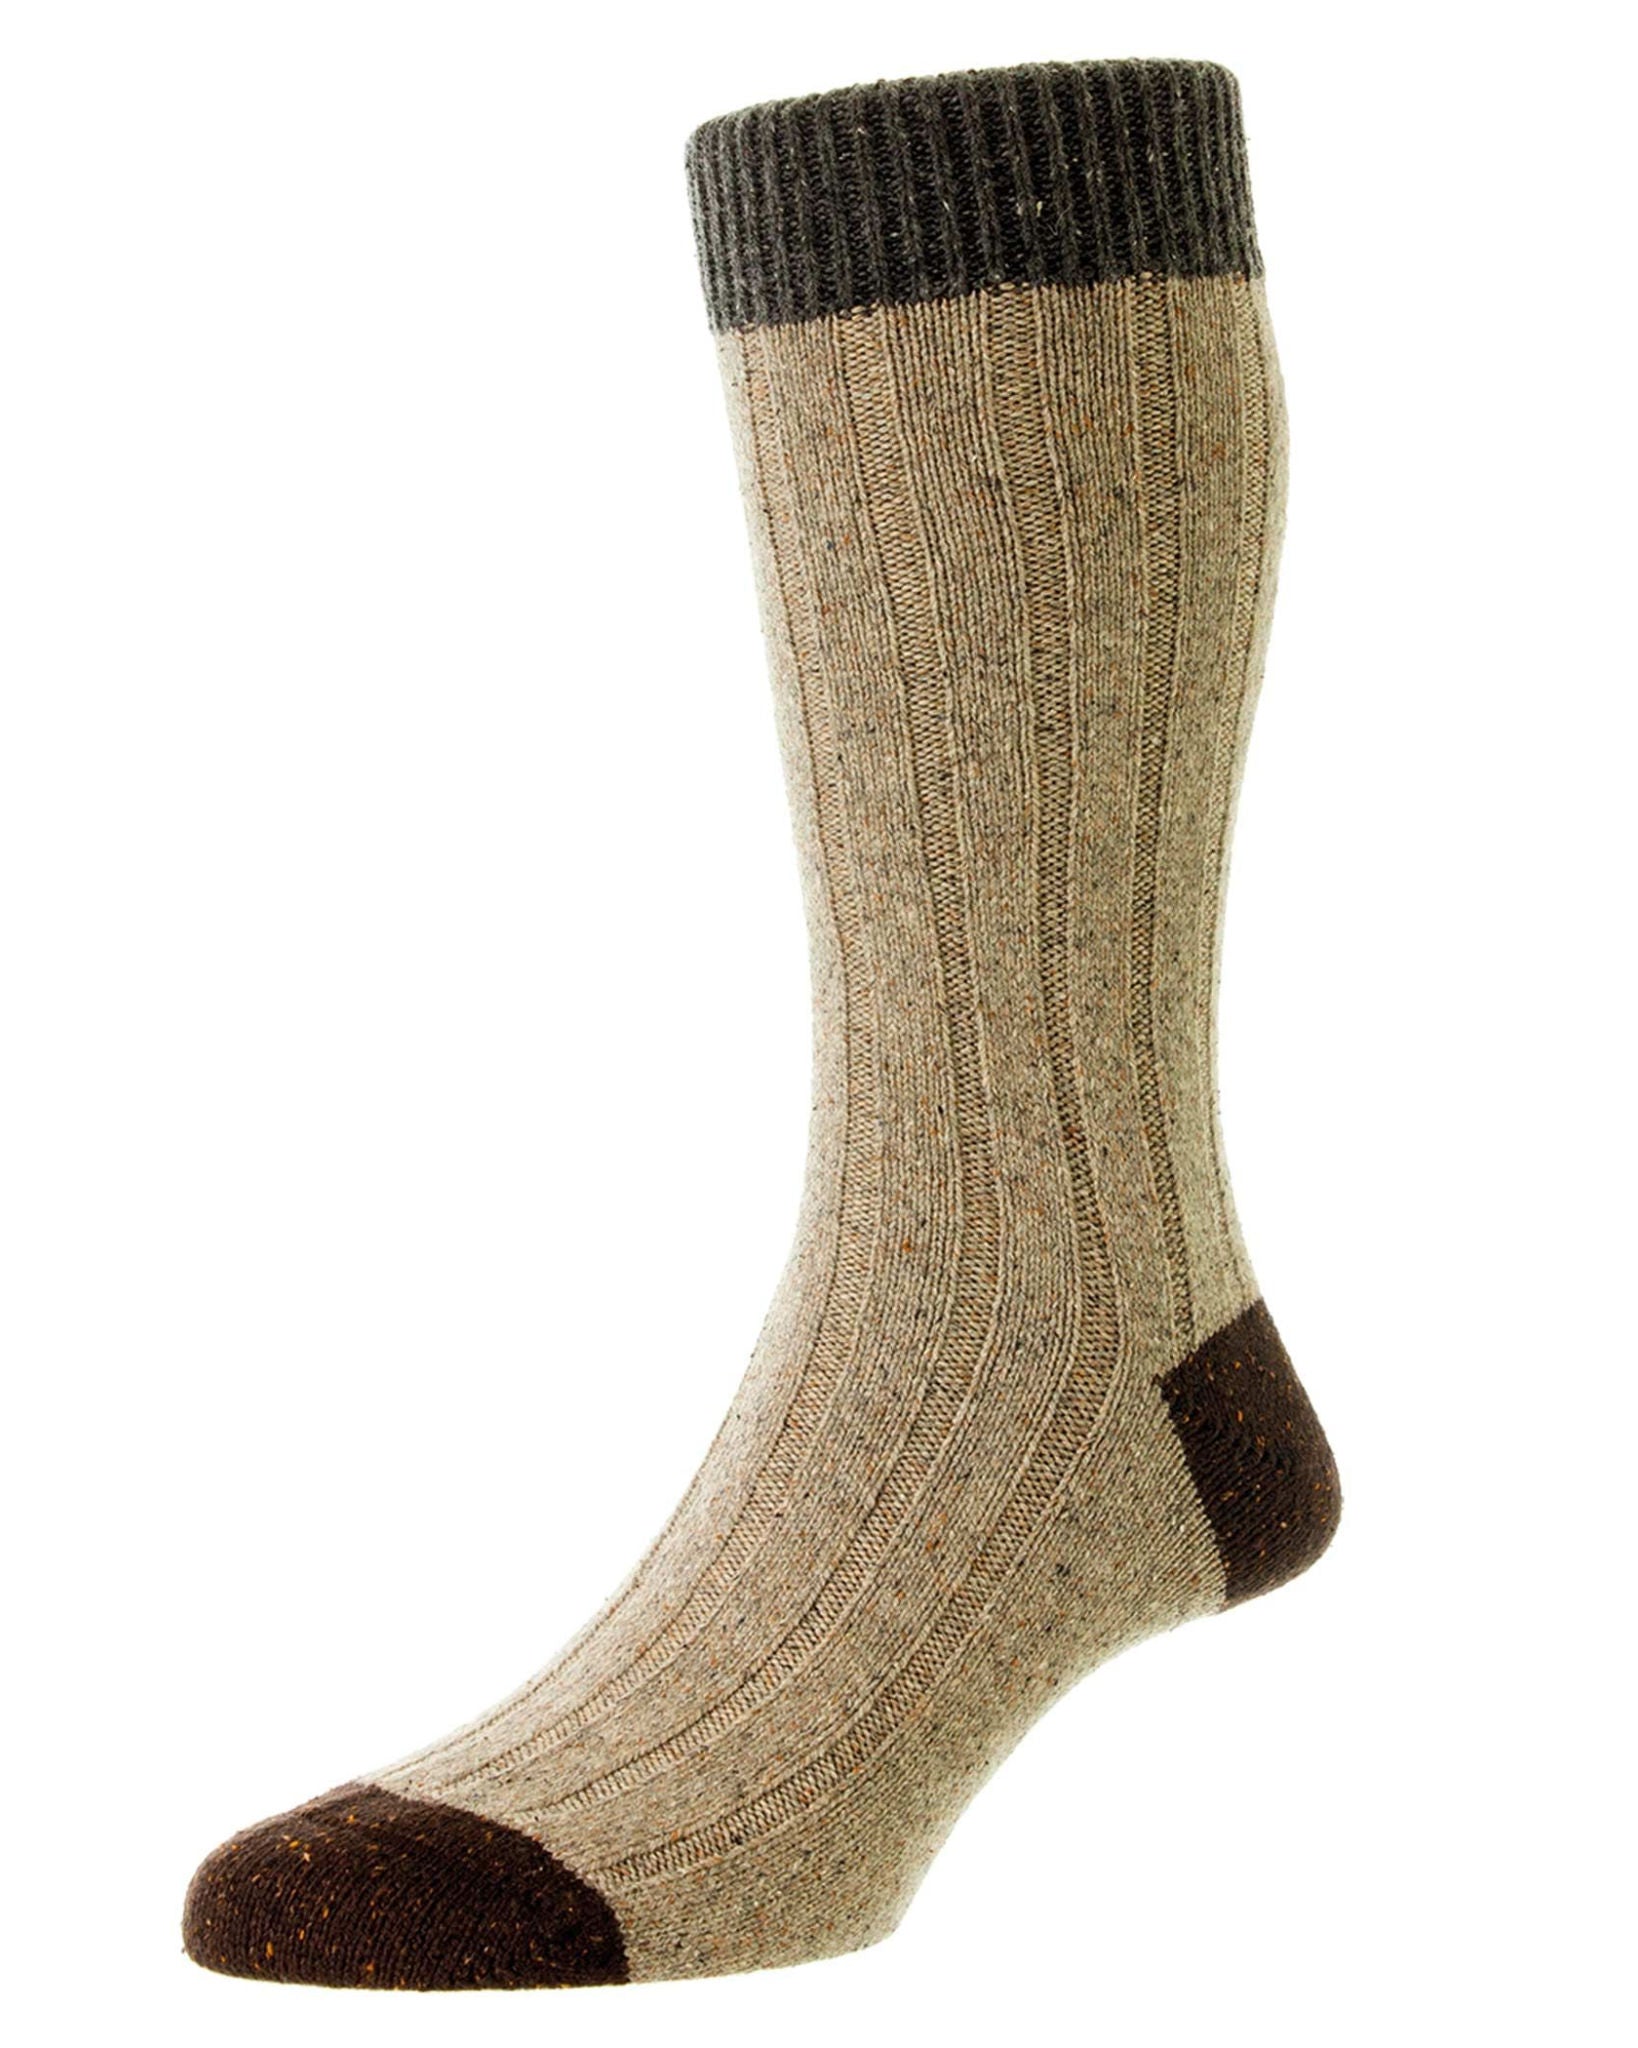 Thornham Socks - Natural Fleck